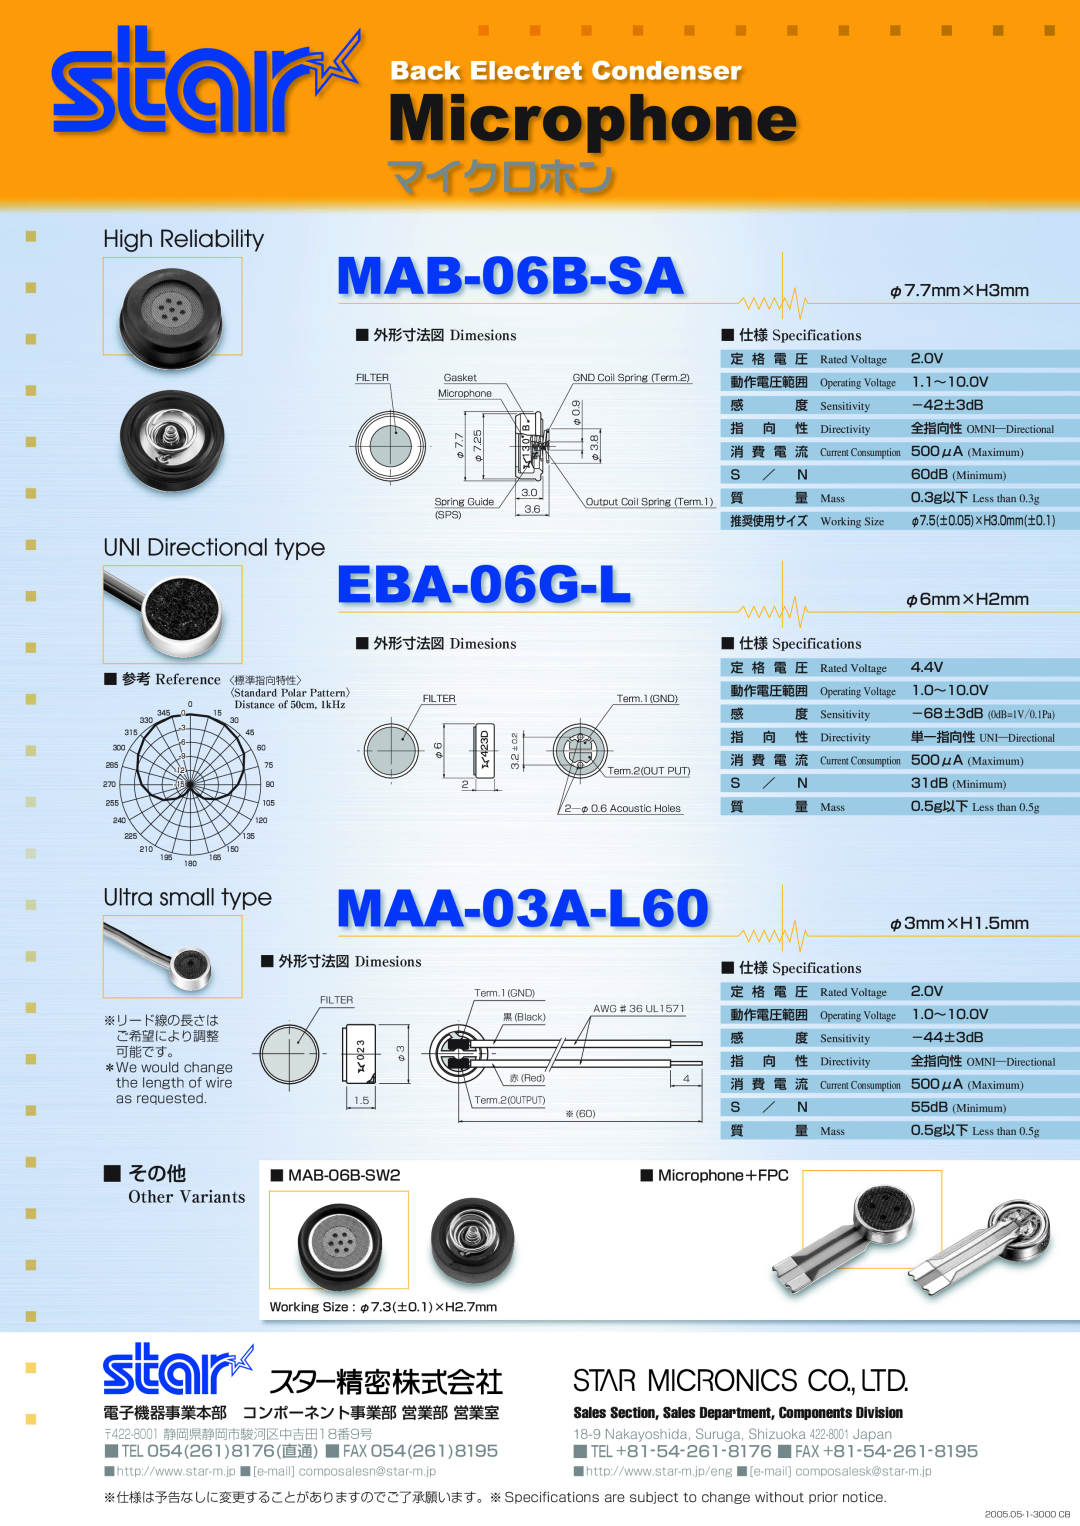 Star Micronics MAC-04B-RS manual φ7.7mm×H3mm, φ6mm×H2mm, φ3mm×H1.5mm, 外形寸法図 Dimesions 参考 Reference 〈標準指向特性〉, Other Variants 